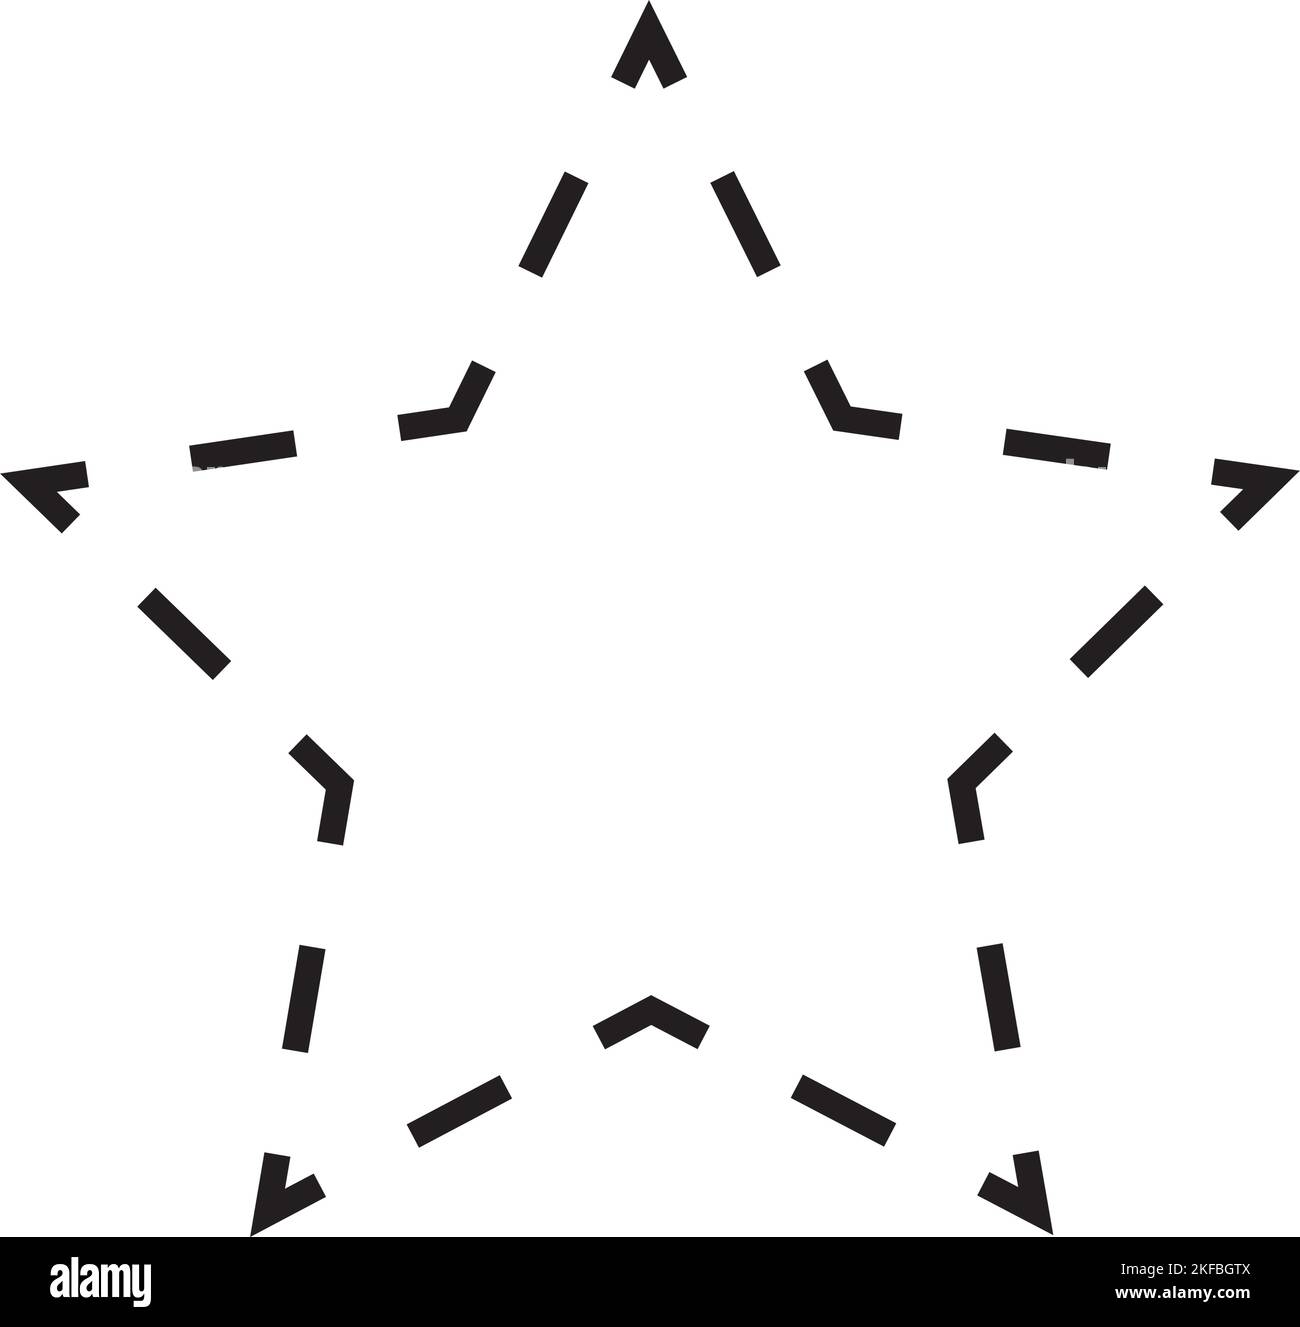 Simbolo vettoriale a forma di stella tratteggiato per l'elemento dell'interfaccia utente di un disegno grafico creativo in un'illustrazione con pittogramma Illustrazione Vettoriale